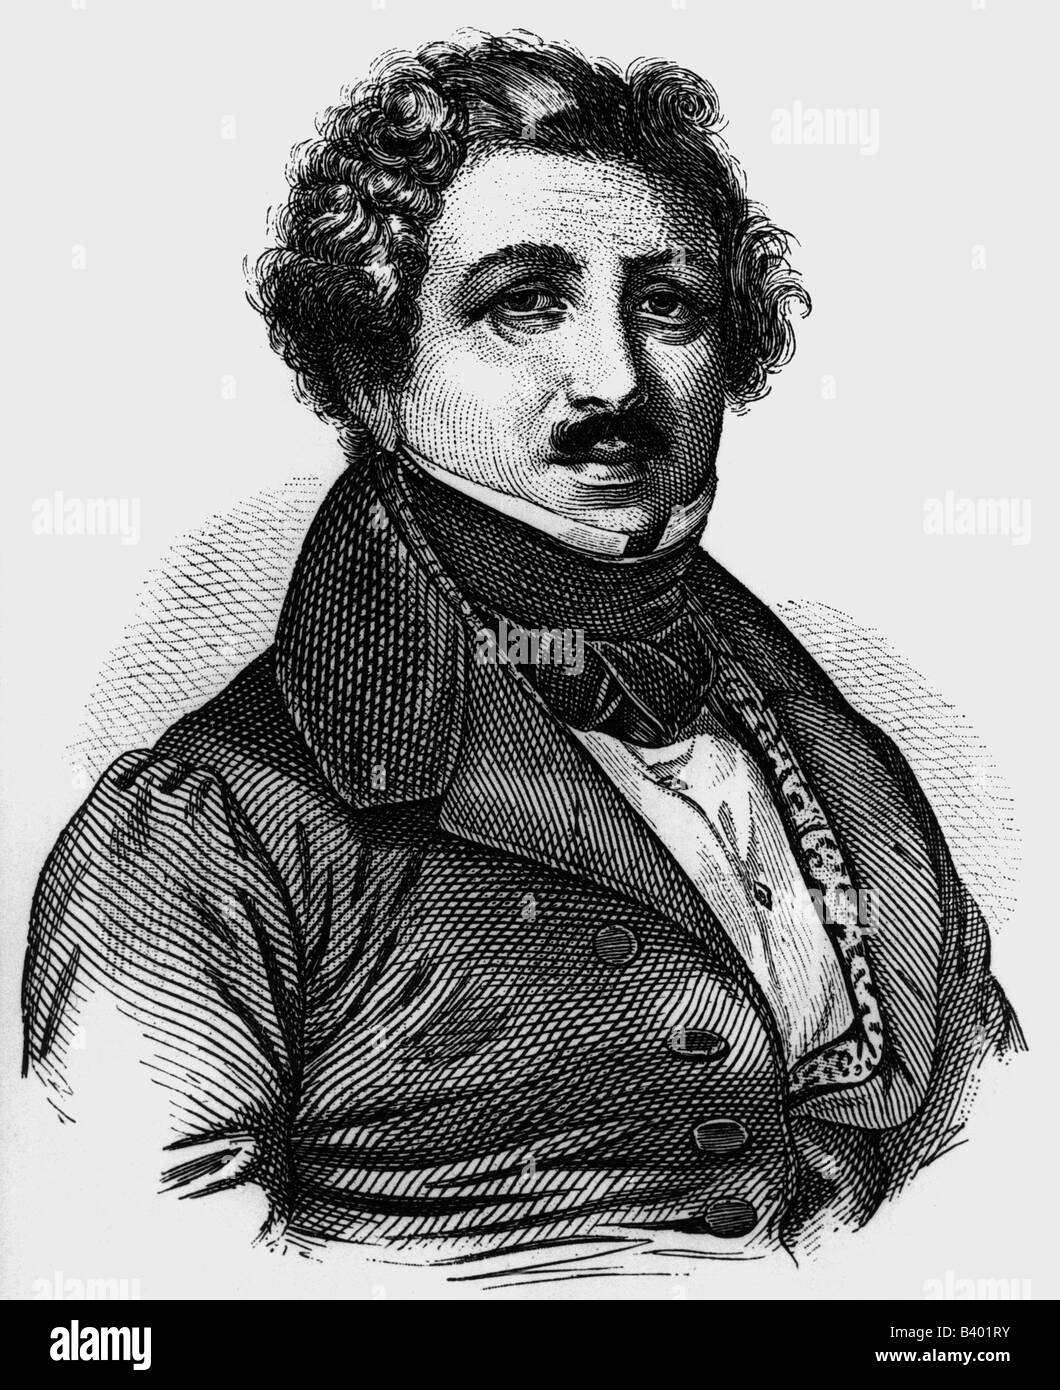 Daguerre, Louis Jacques Mande, 18.11.1789 - 10.7.1851, pittore francese, inventore, ritratto, incisione in legno, 19th secolo, Foto Stock